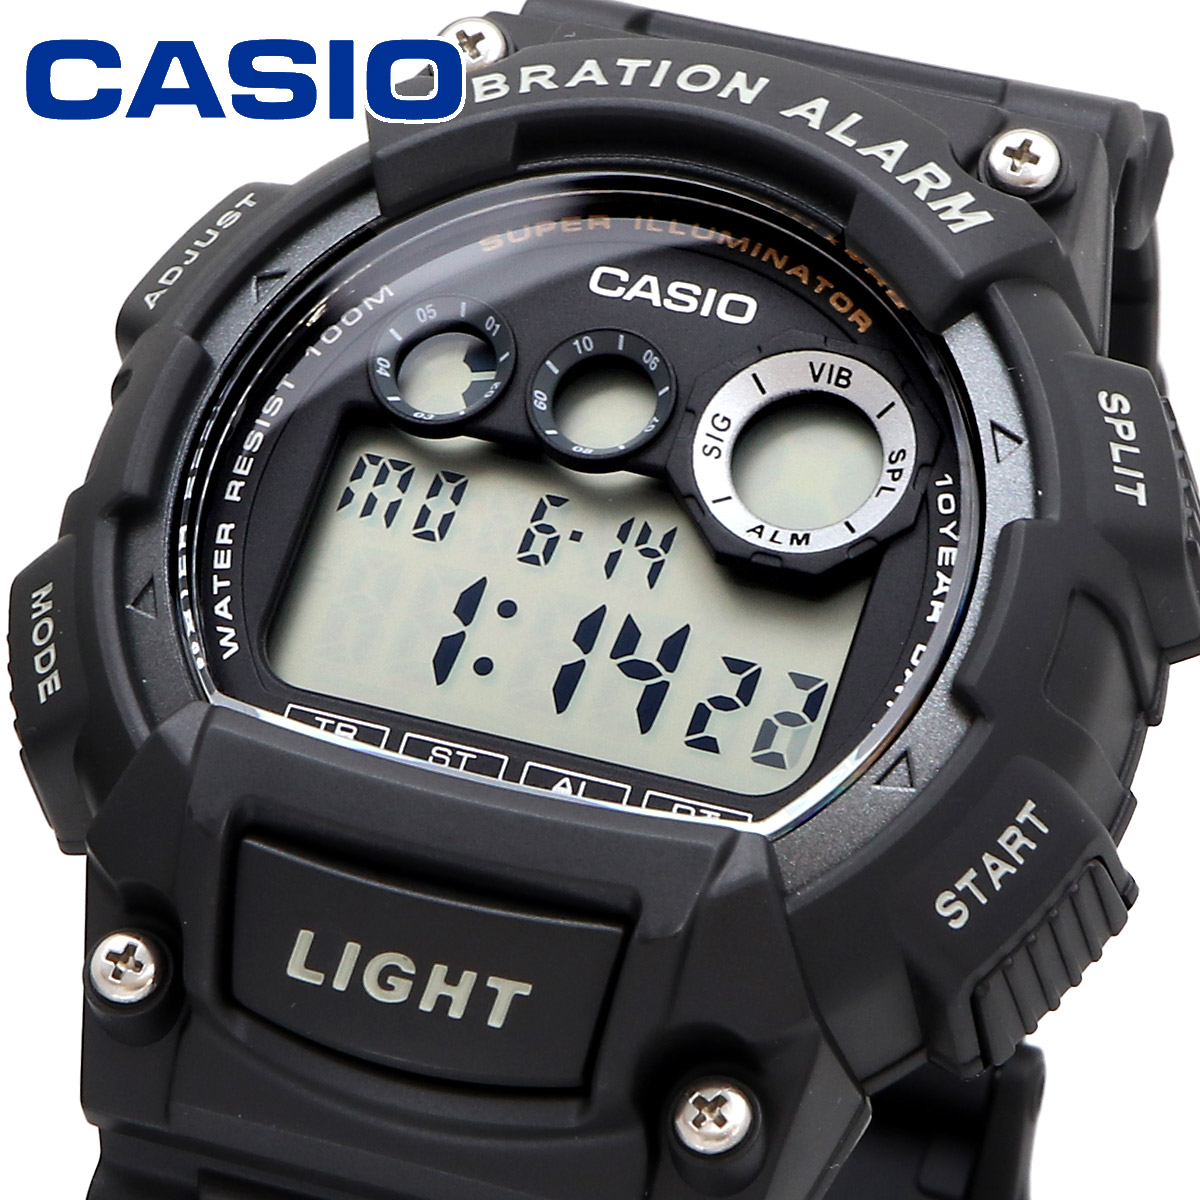 CASIO カシオ 腕時計 メンズ チープカシオ チプカシ   海外モデル バイブレーション機能  W-735H-1AV